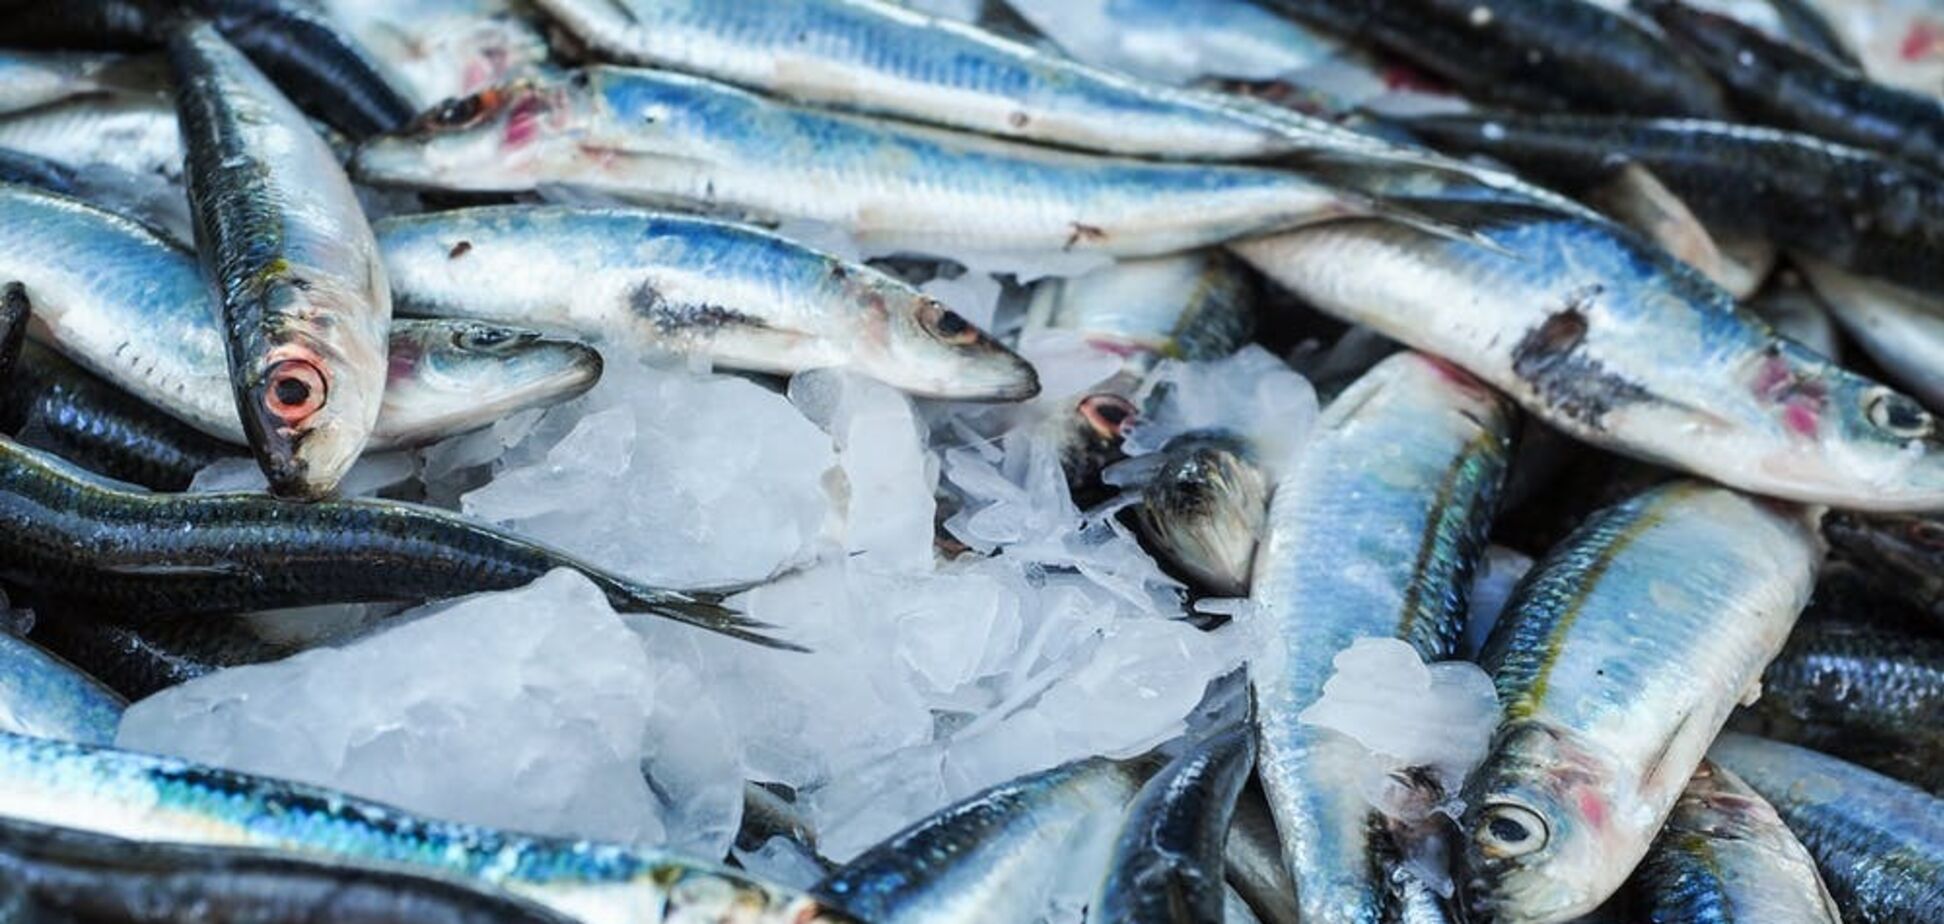 Какая рыба самая полезная и как ее правильно приготовить: топ-5 бюджетных видов